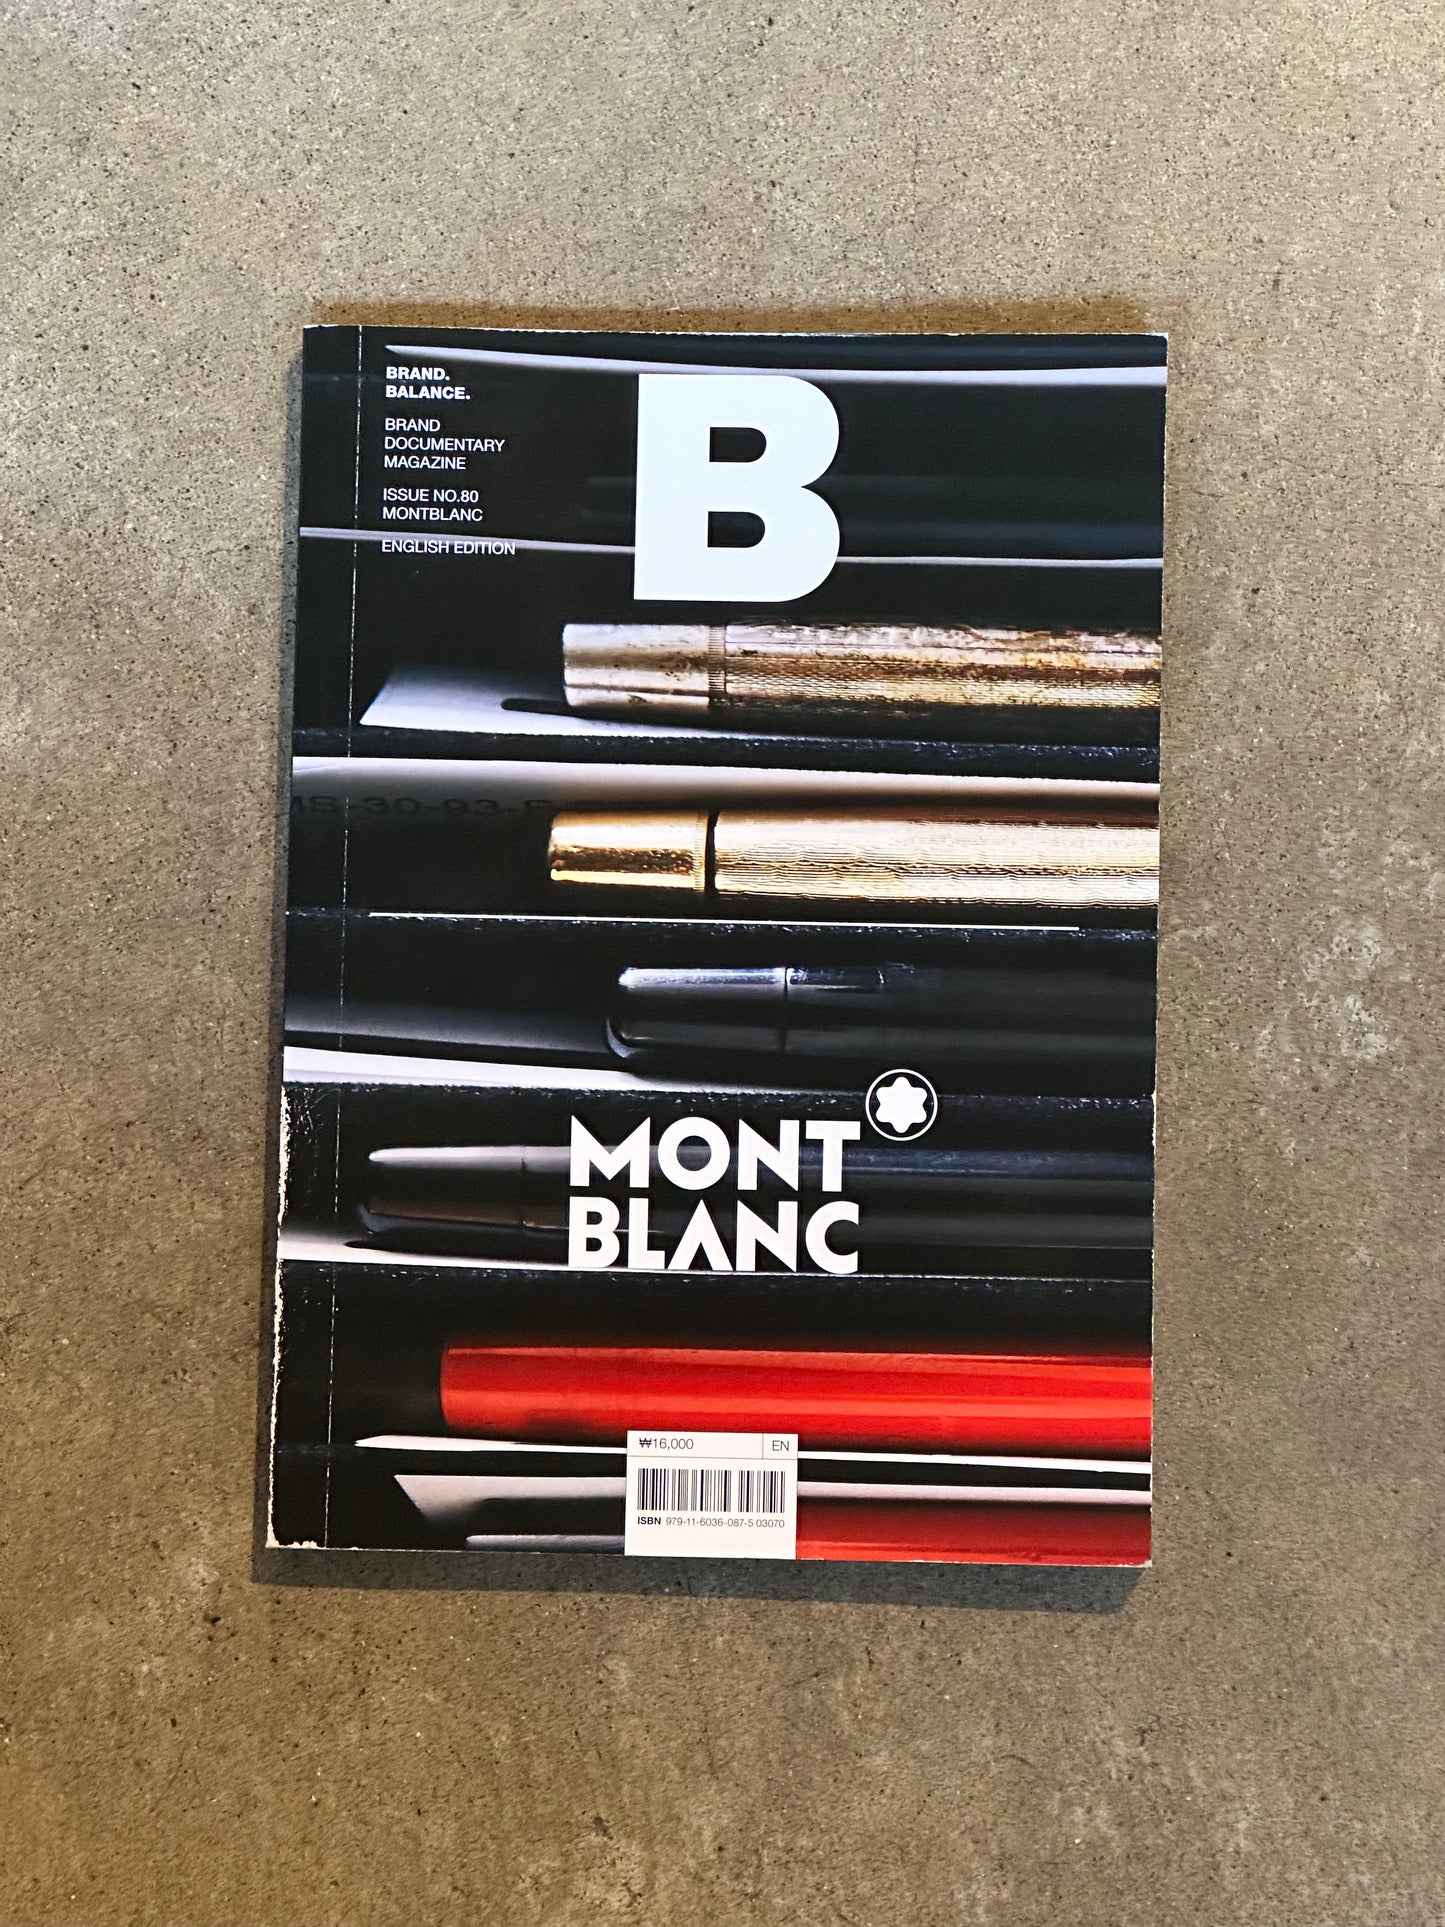 Magazine B - Mont Blanc - Issue 80